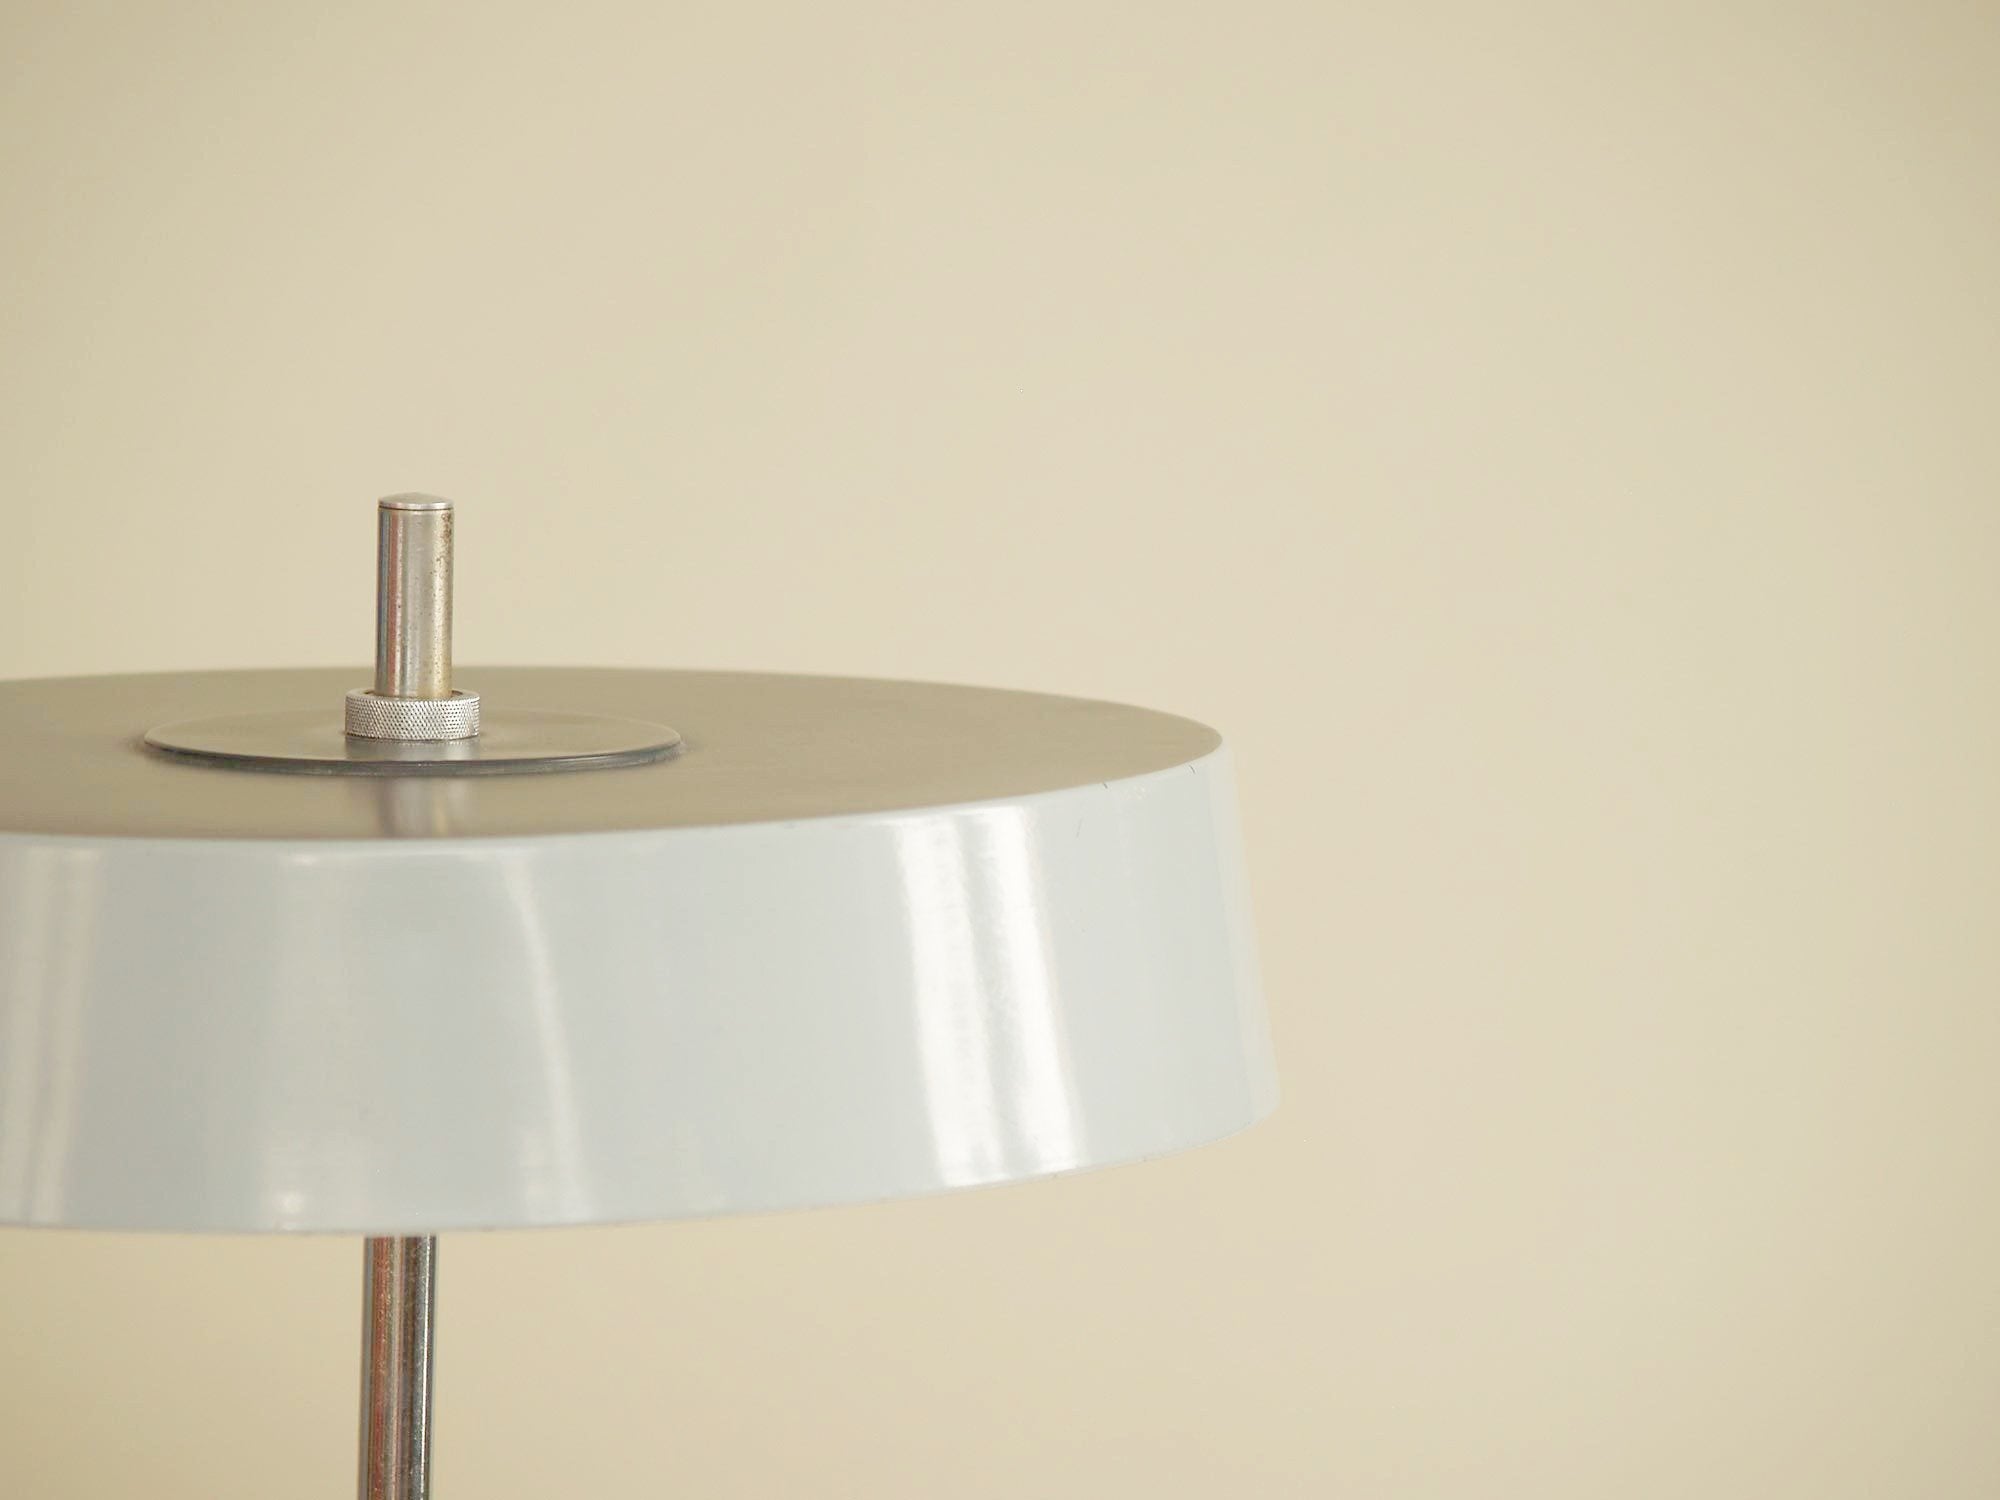 Lampe de table moderniste attribuée à Louis Kalff pour Philips, Pays-Bas (vers 1960)..Modernist minimalist Lamp attributed to Louis Kalff for Philips, Netherlands (circa 1960)